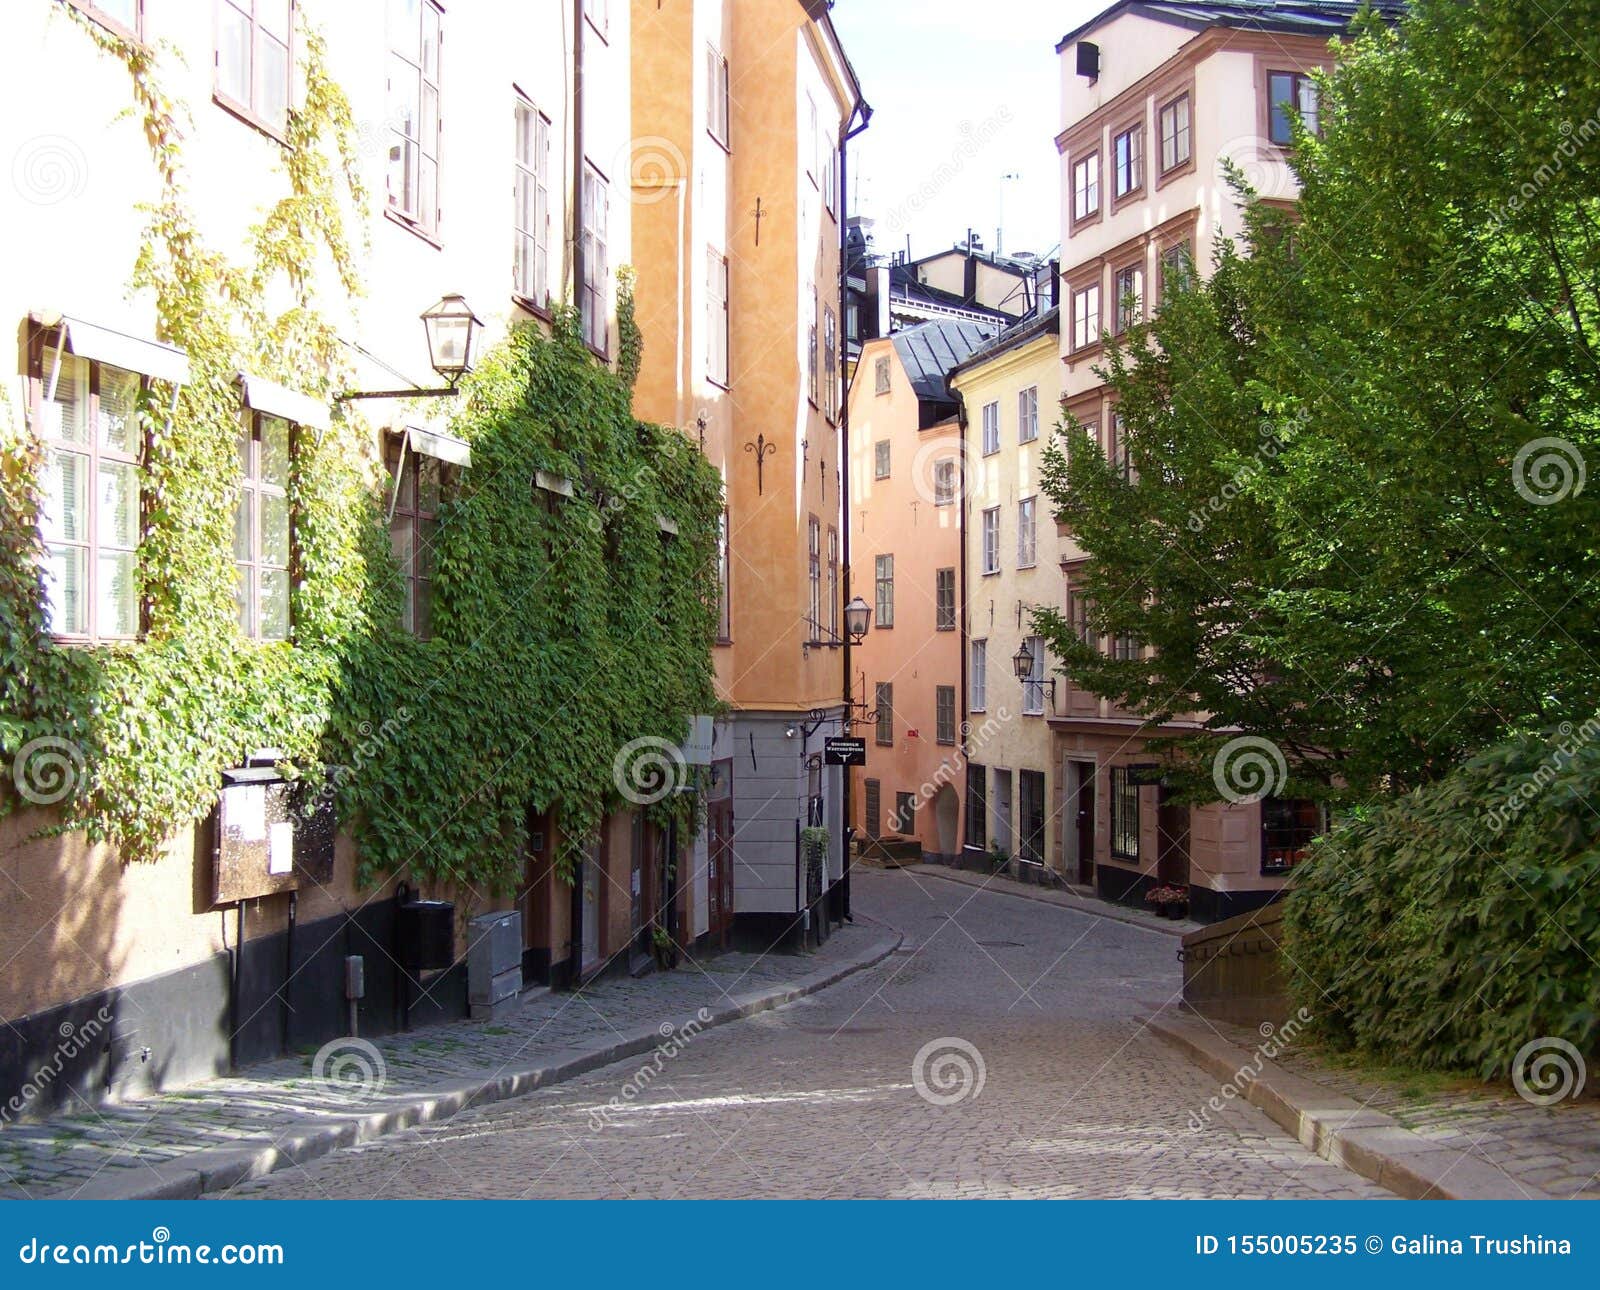 stockholm-sweden-narrow-streets-stockholm-green-plants-trees-narrow-streets-stockholm-green-plants-trees-155005235.jpg